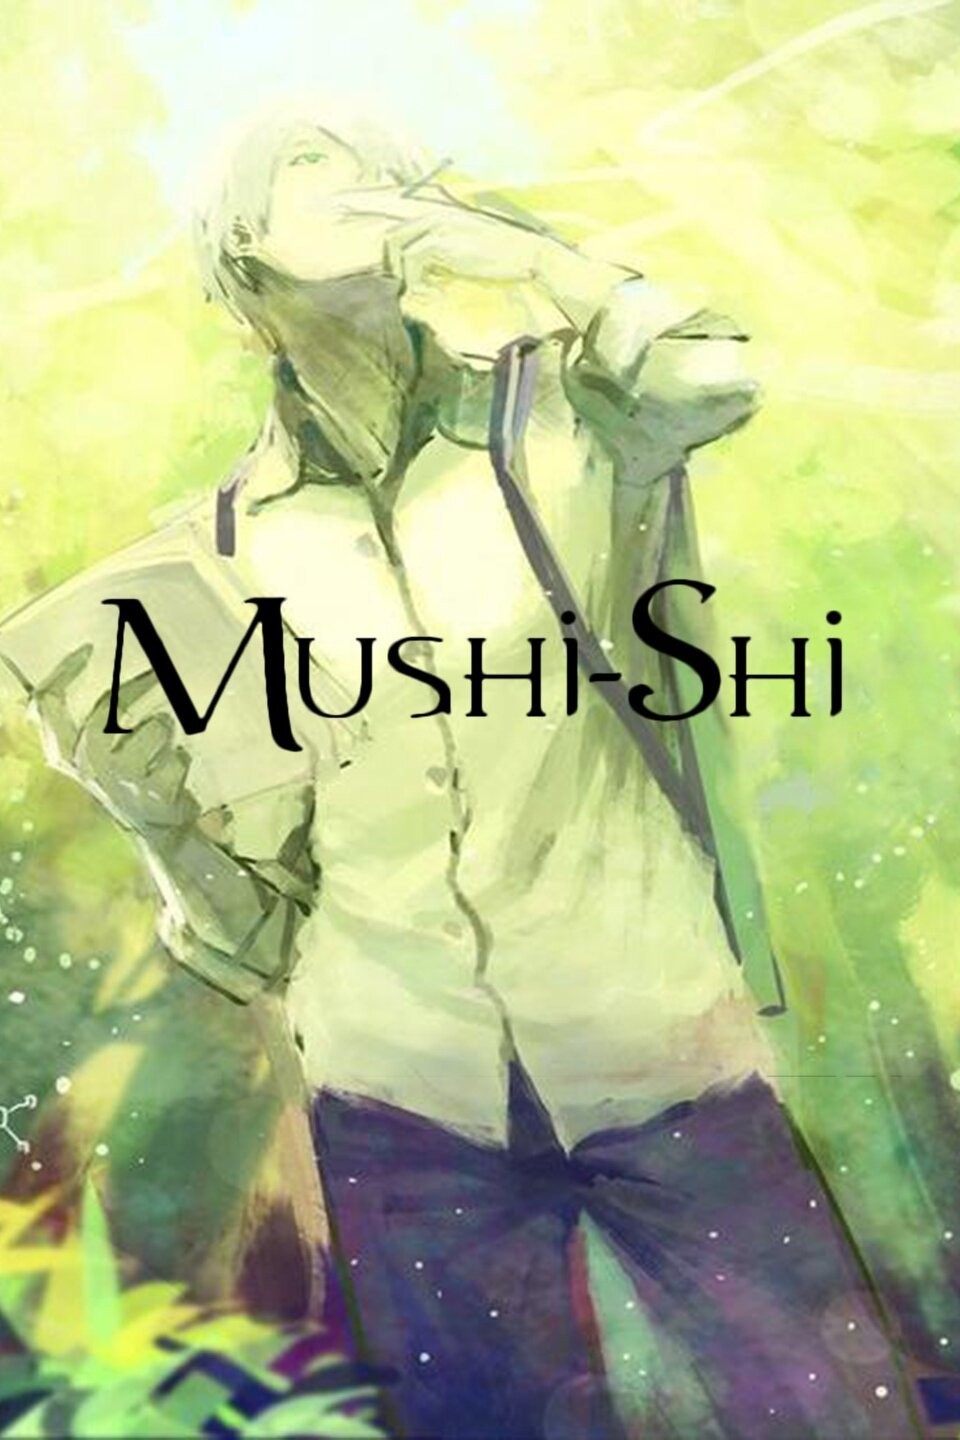 Amazon.com: Mushi-shi, Vol. 5 : Movies & TV